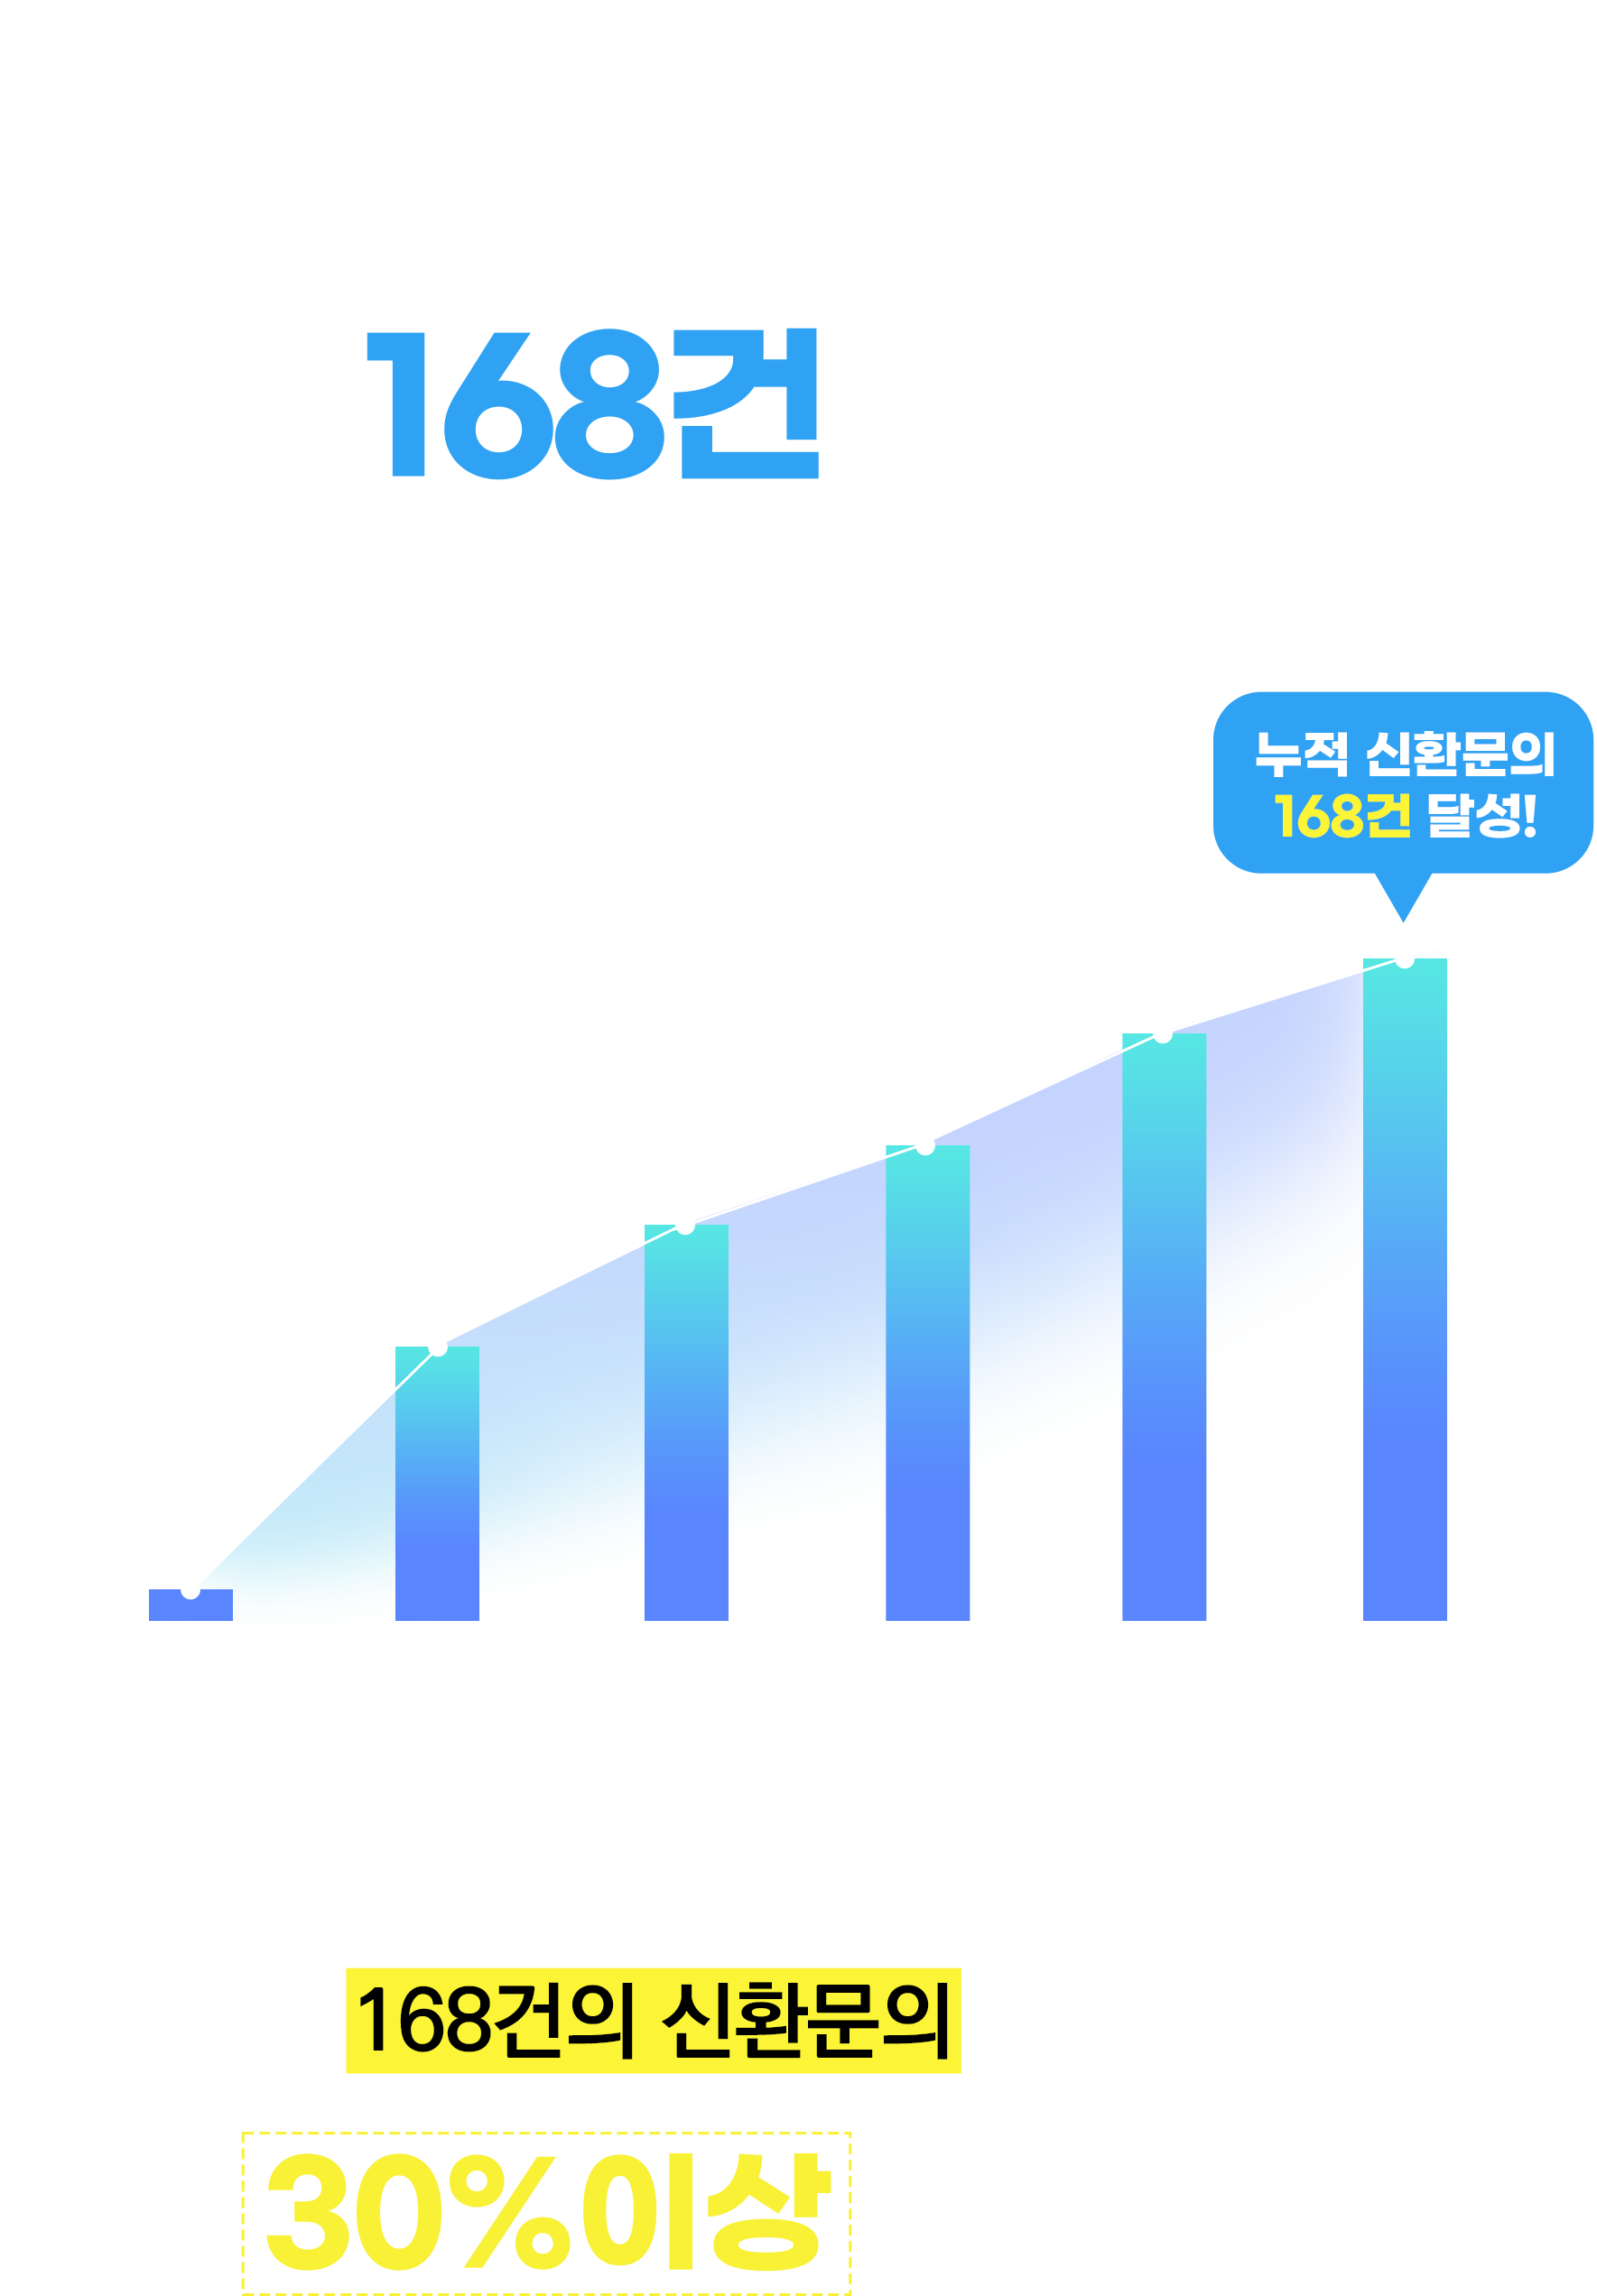 블로그 브랜딩 진행 후, 신규 내원문의 168건 달성!